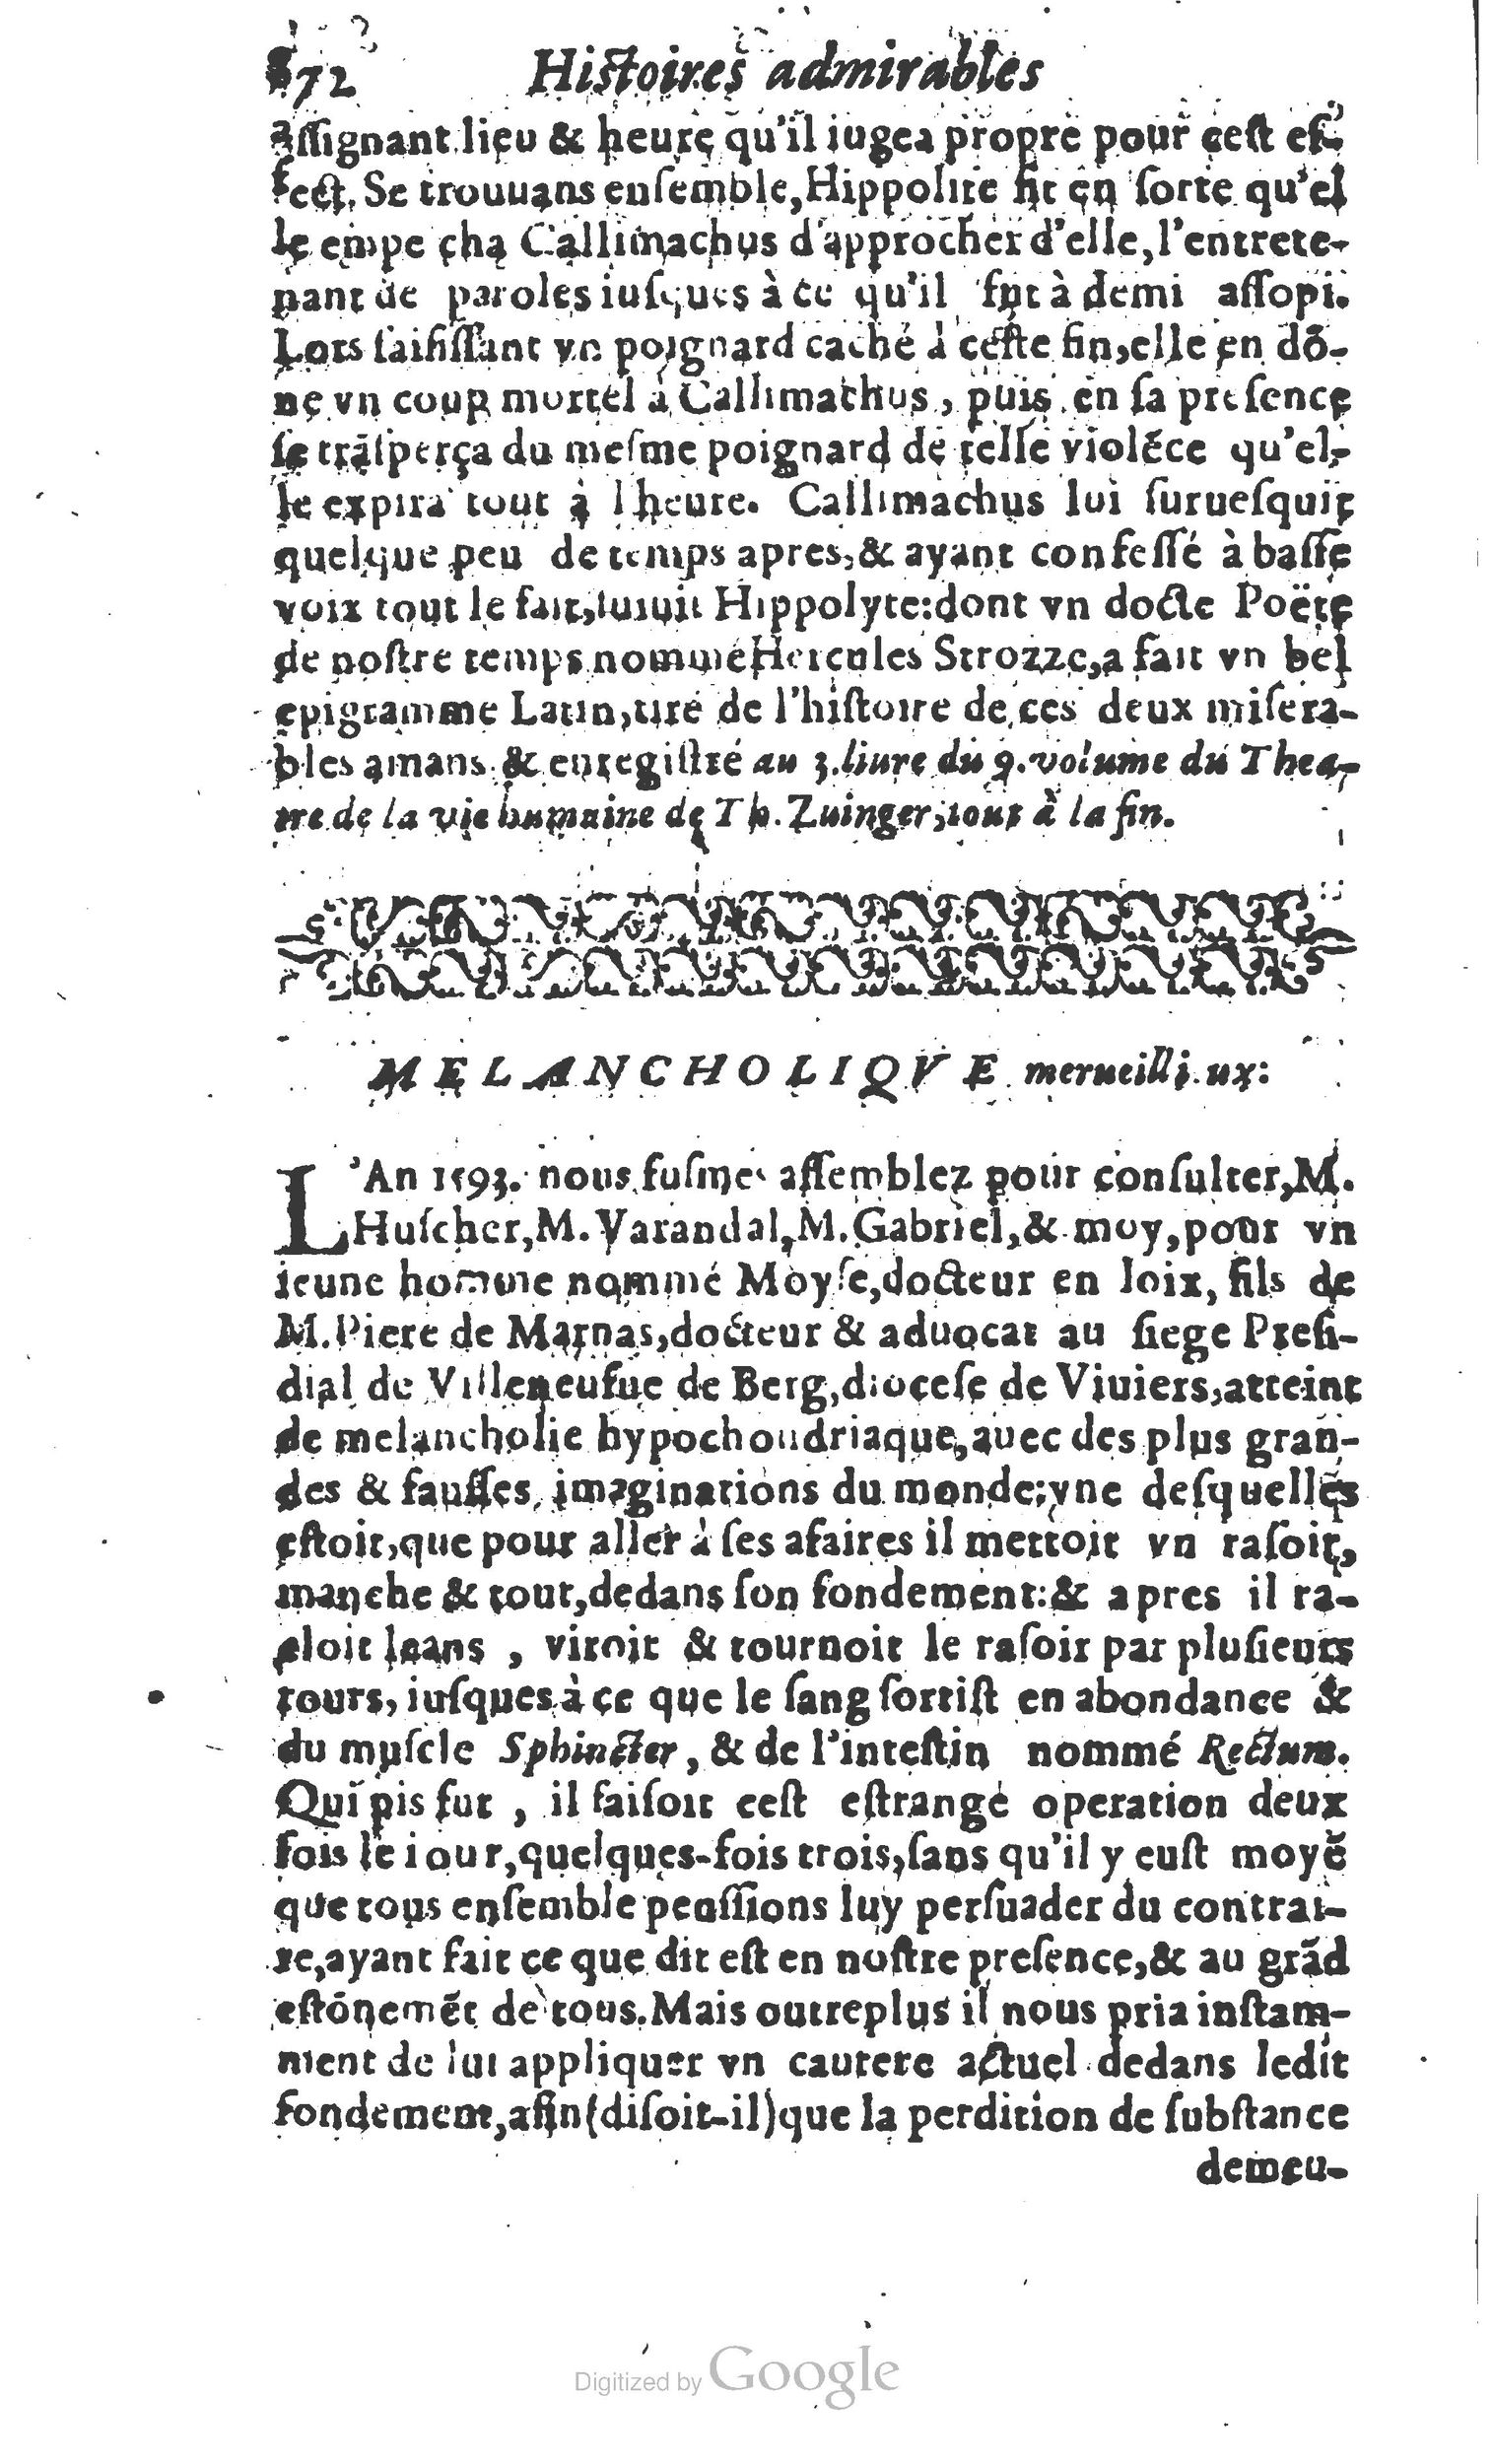 1610 Trésor d’histoires admirables et mémorables de nostre temps Marceau Princeton_Page_0893.jpg